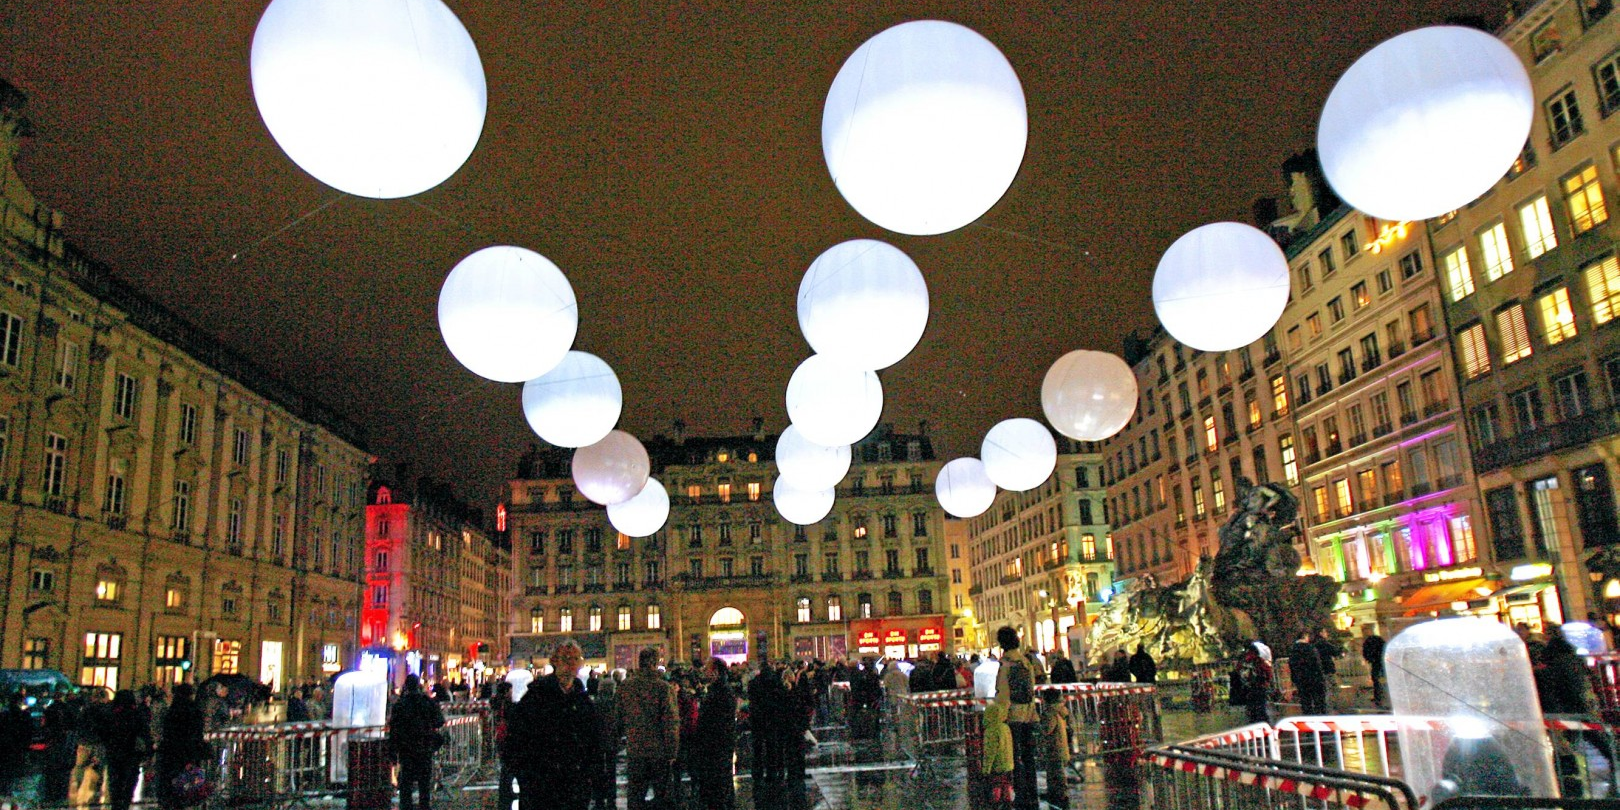 La France a économisé de l'électricité en décembre grâce à une meilleure gestion de l'éclairage public